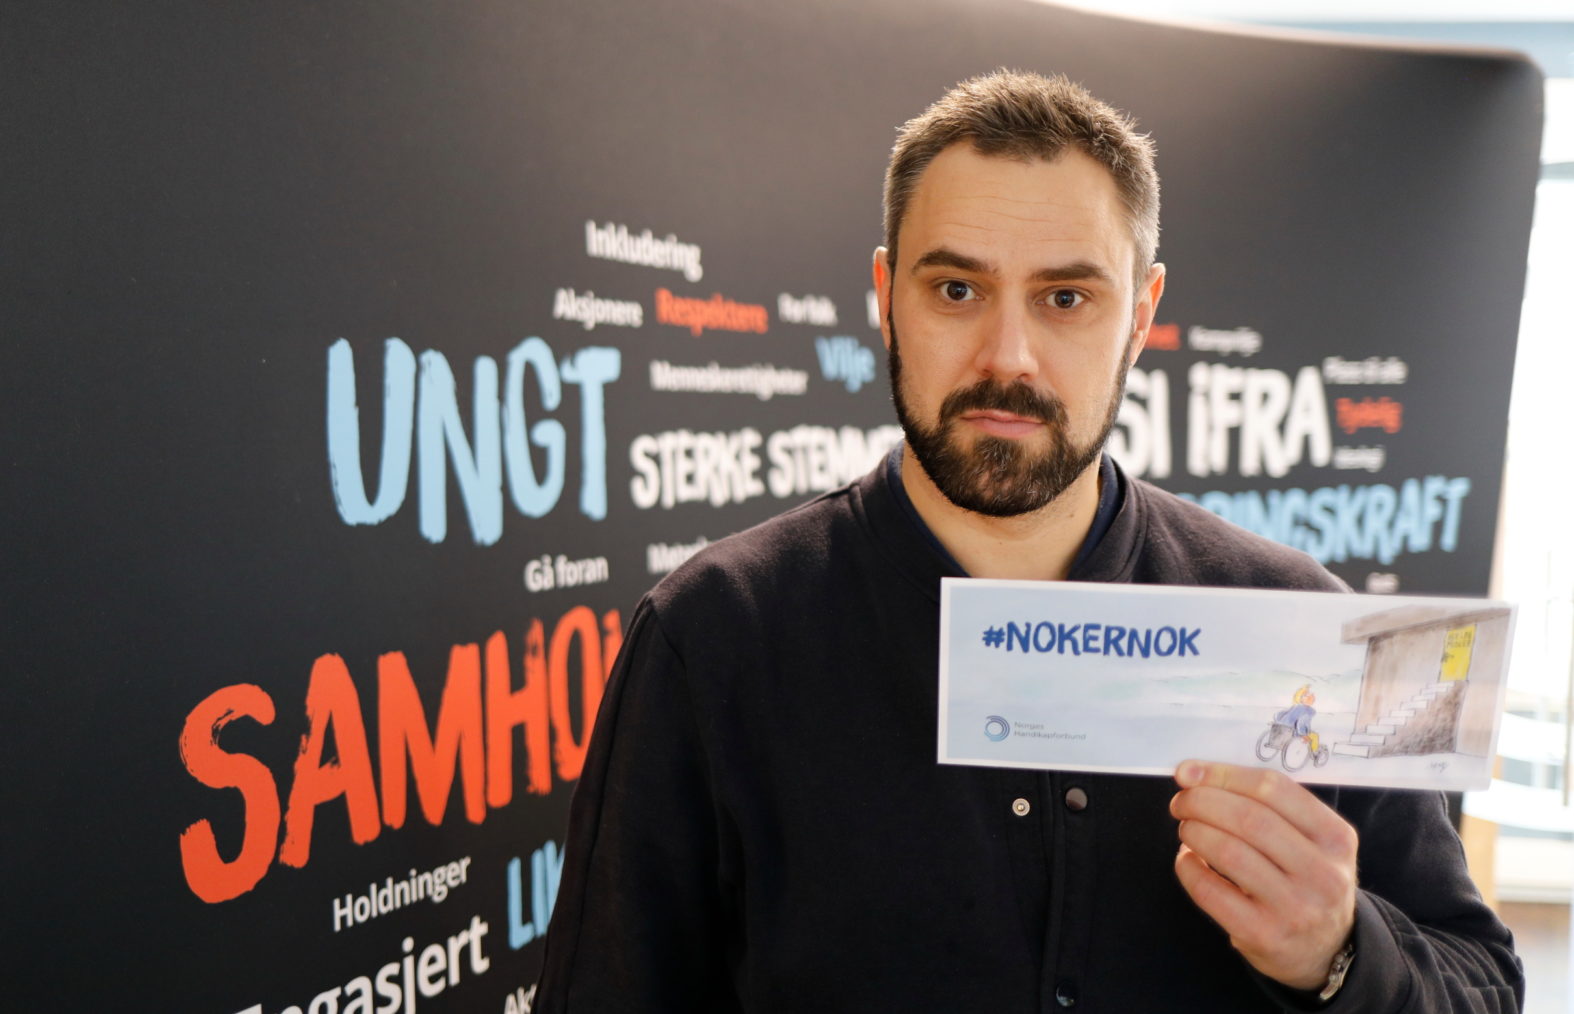 Herttua fotografert med kampanjeplakaten #nokernok